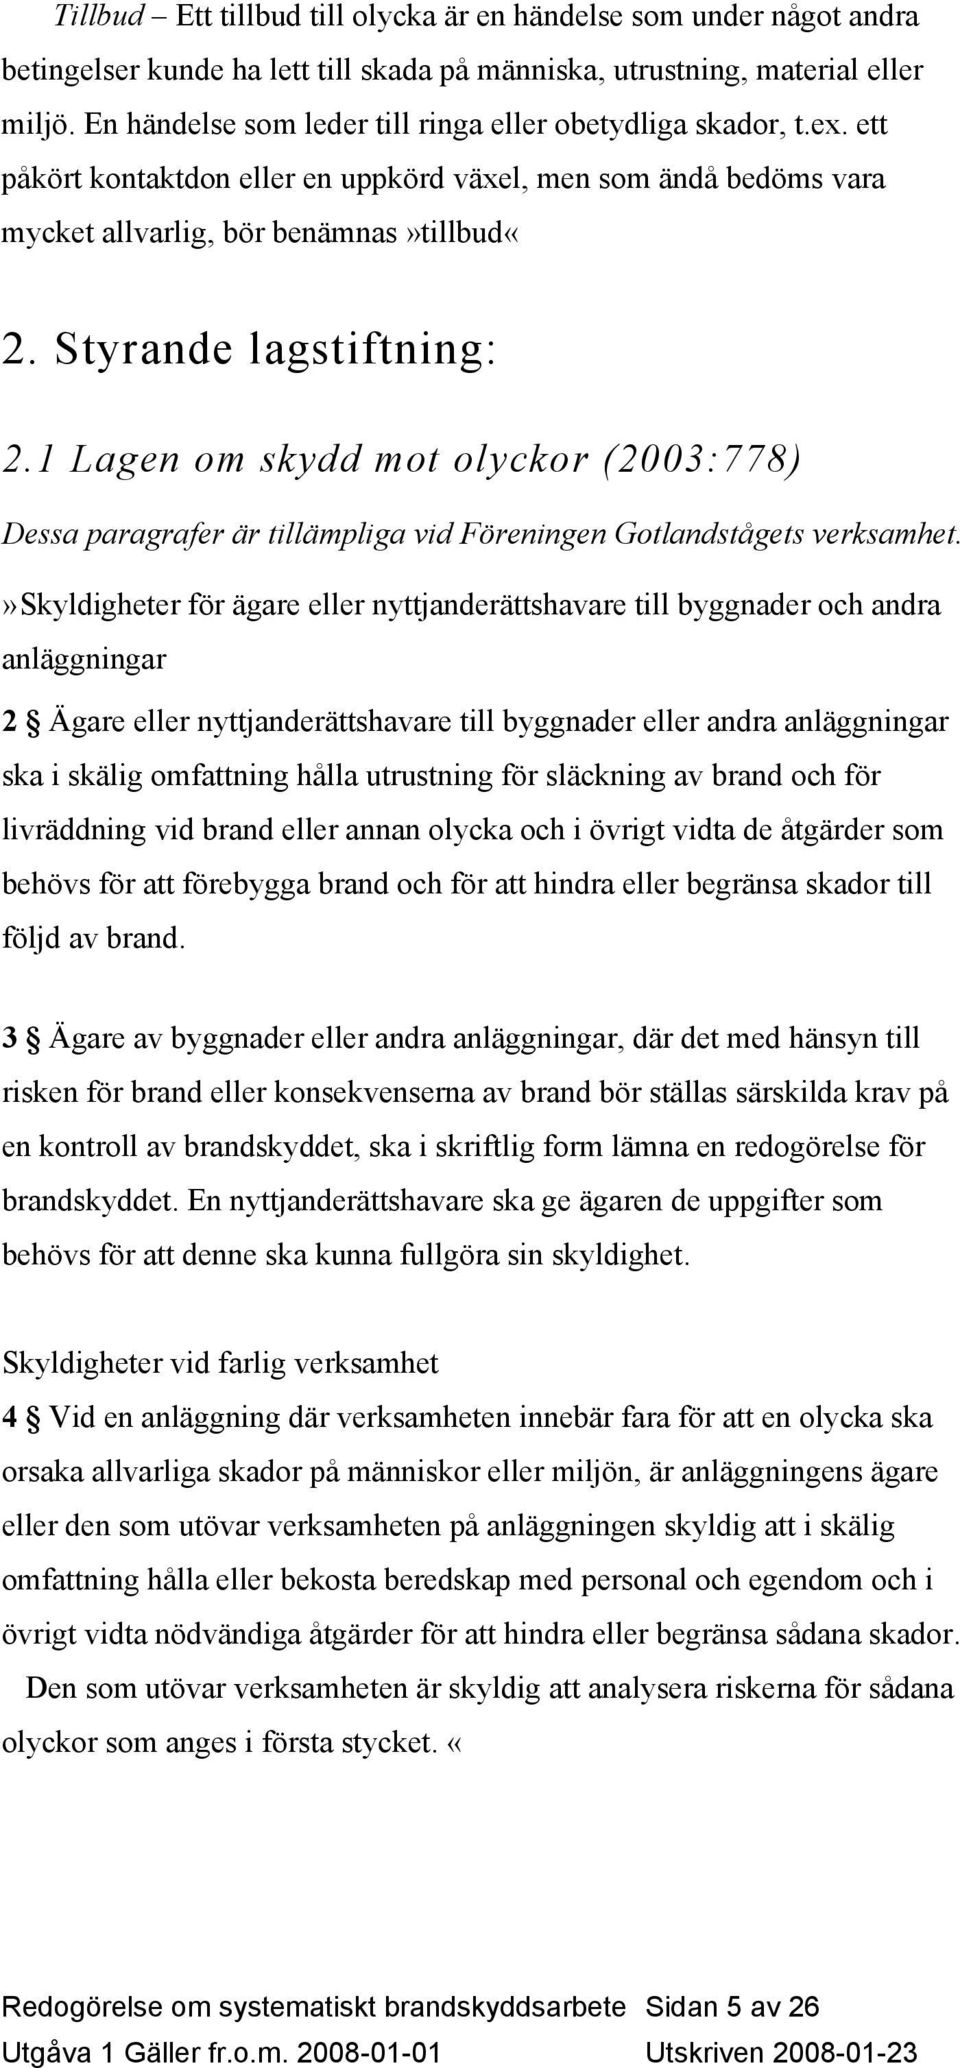 Styrande lagstiftning: 2.1 Lagen om skydd mot olyckor (2003:778) Dessa paragrafer är tillämpliga vid Föreningen Gotlandstågets verksamhet.